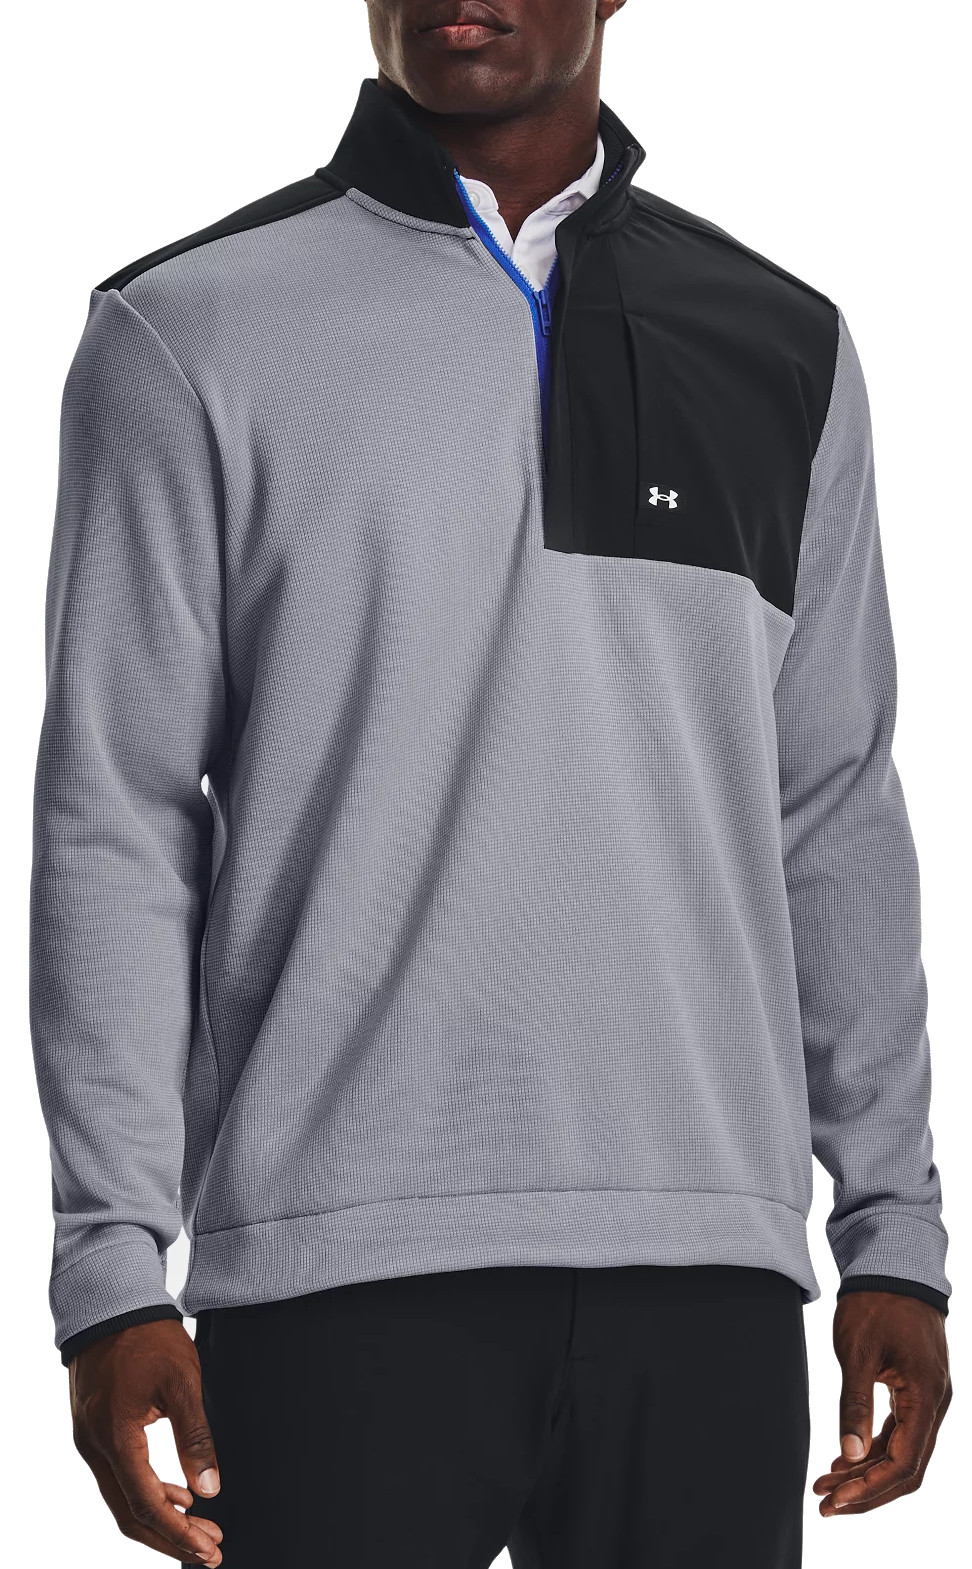 Φούτερ-Jacket Under Armour UA Storm SweaterFleece